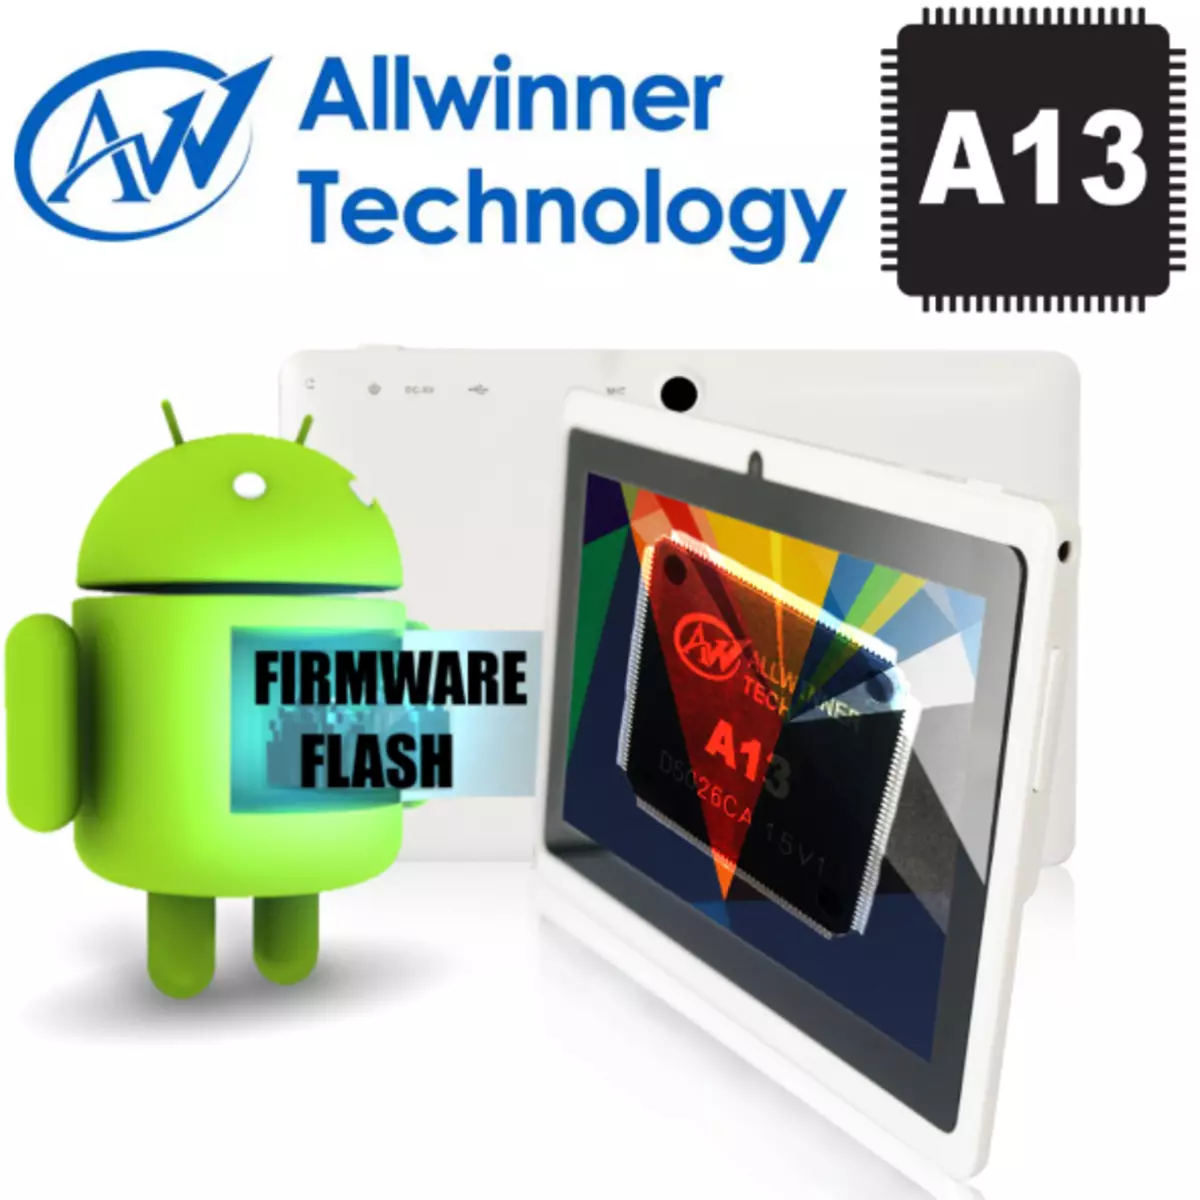 I-ALTINNER A13 firmware